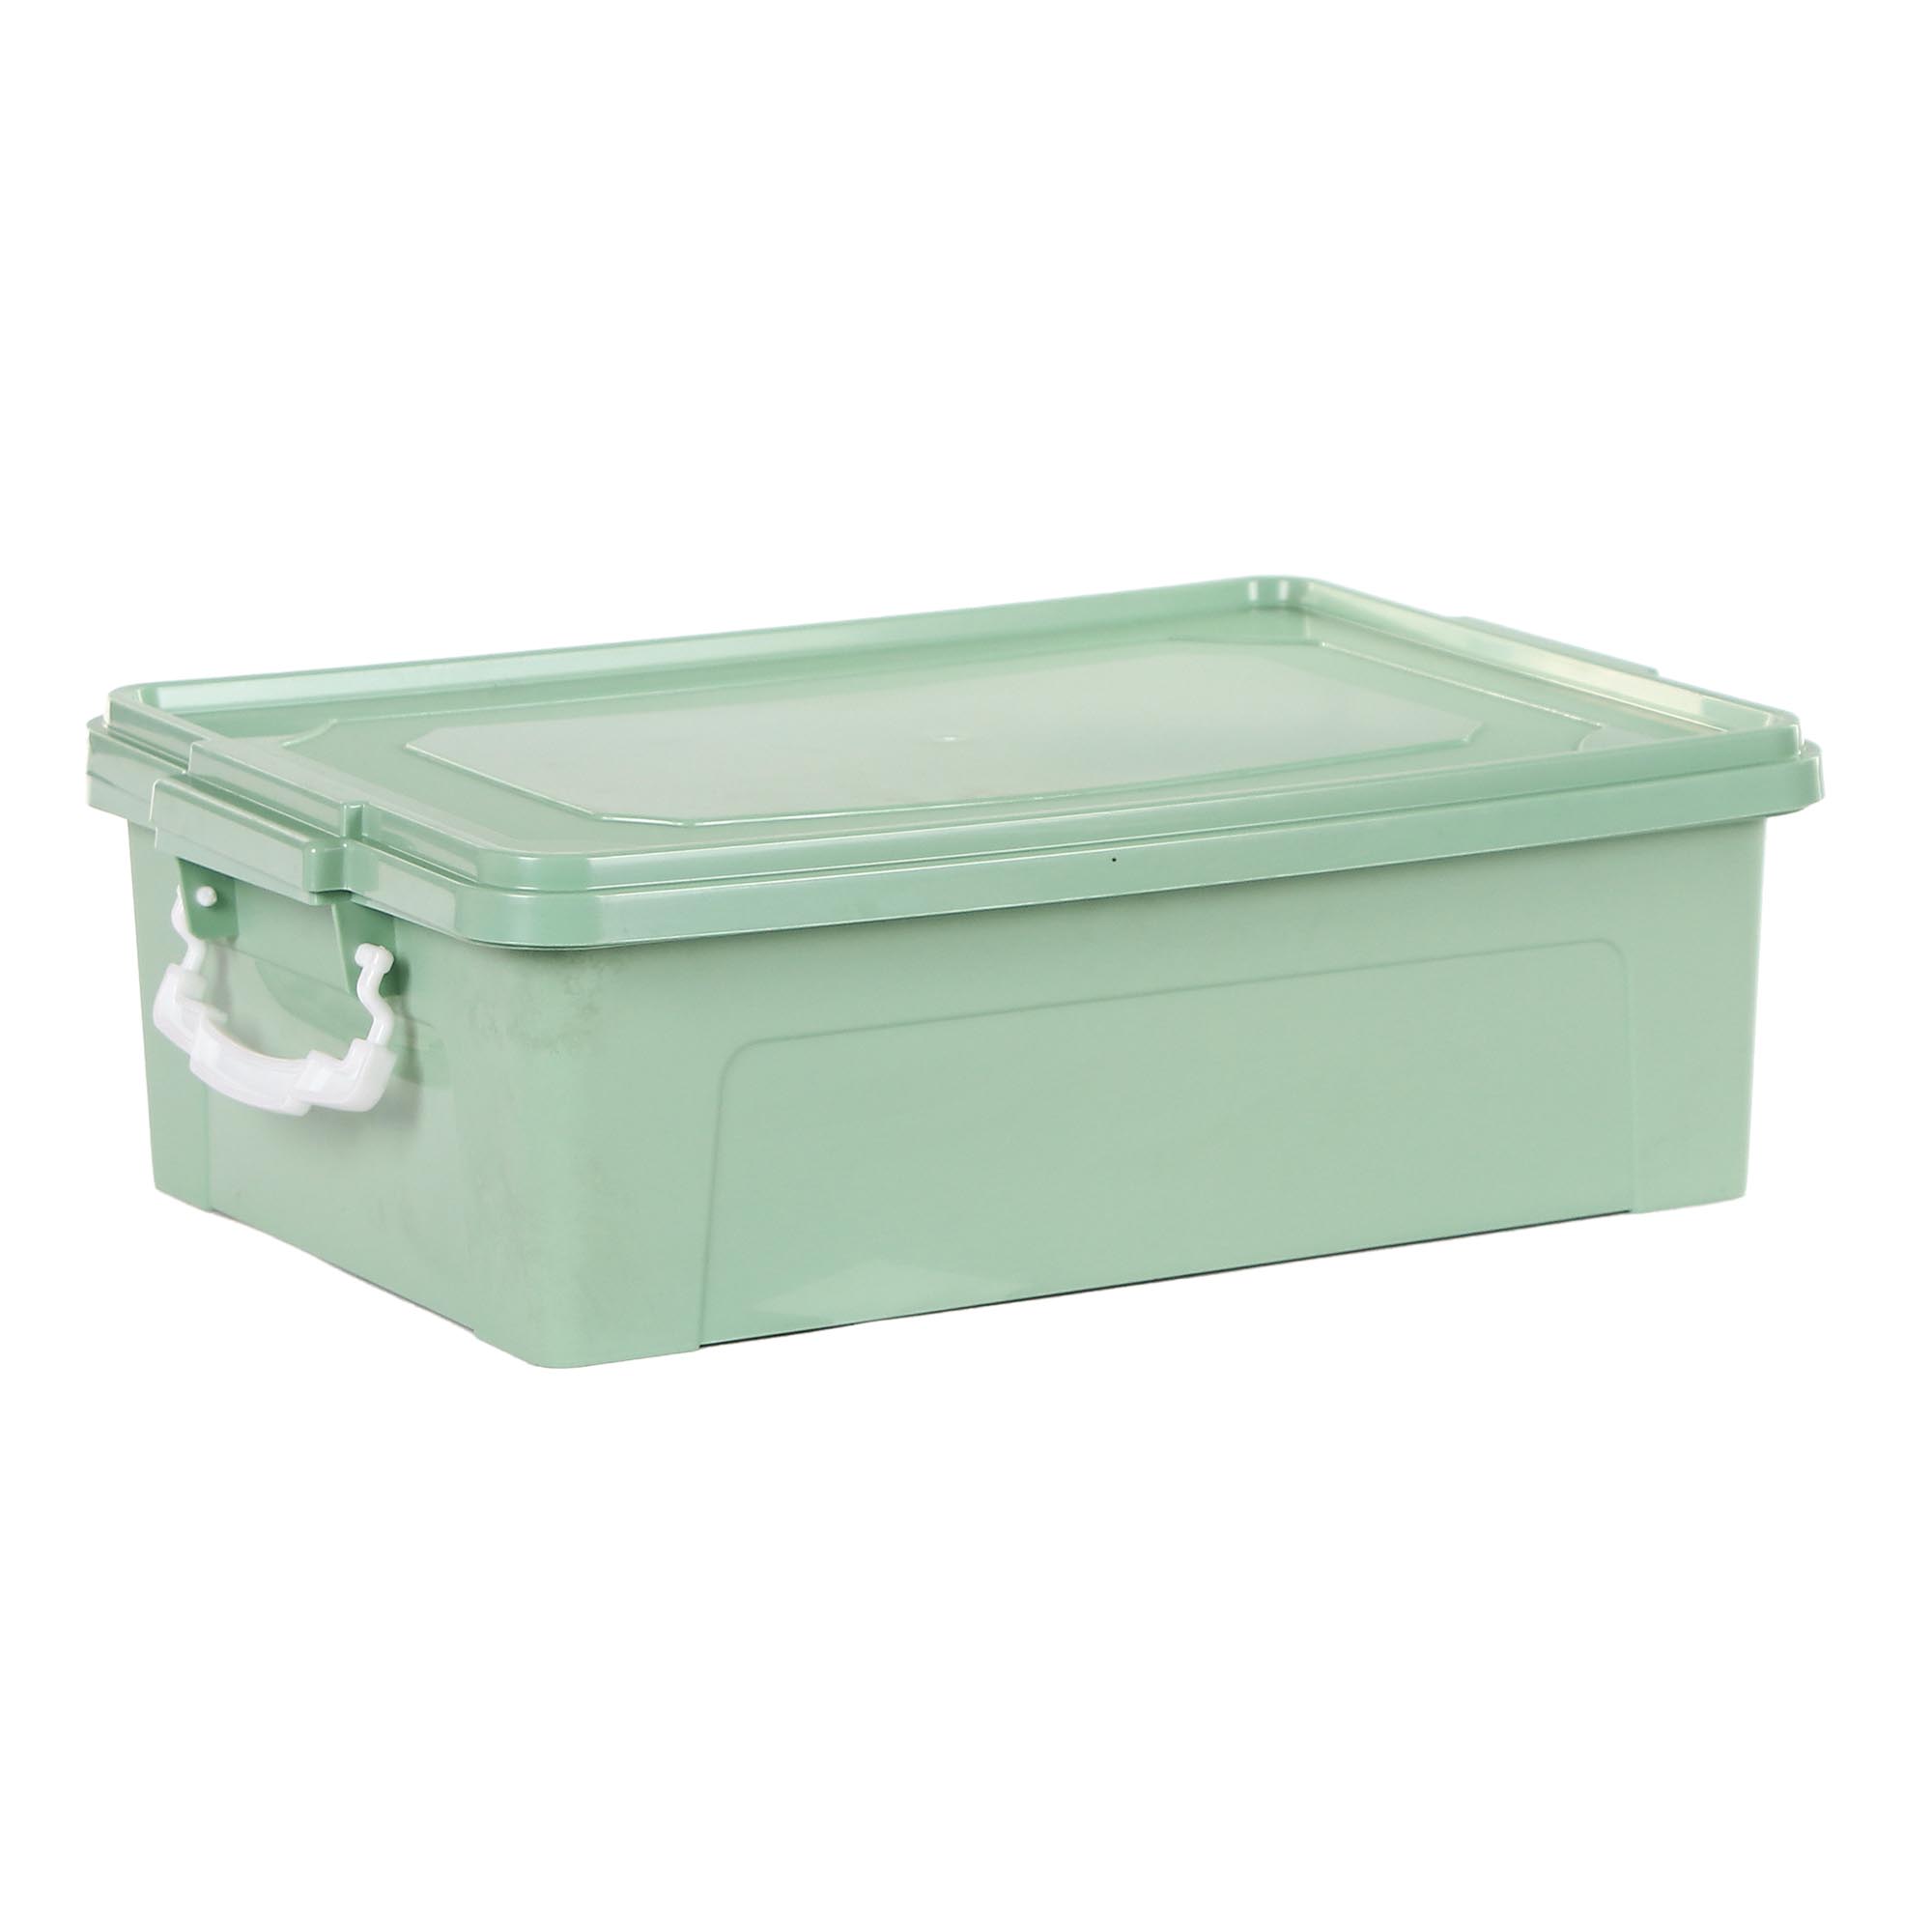 Контейнер Stars Plast для хранения 10 л, зеленый контейнер под пакеты для уборки за собаками 7 х 4 см зеленый